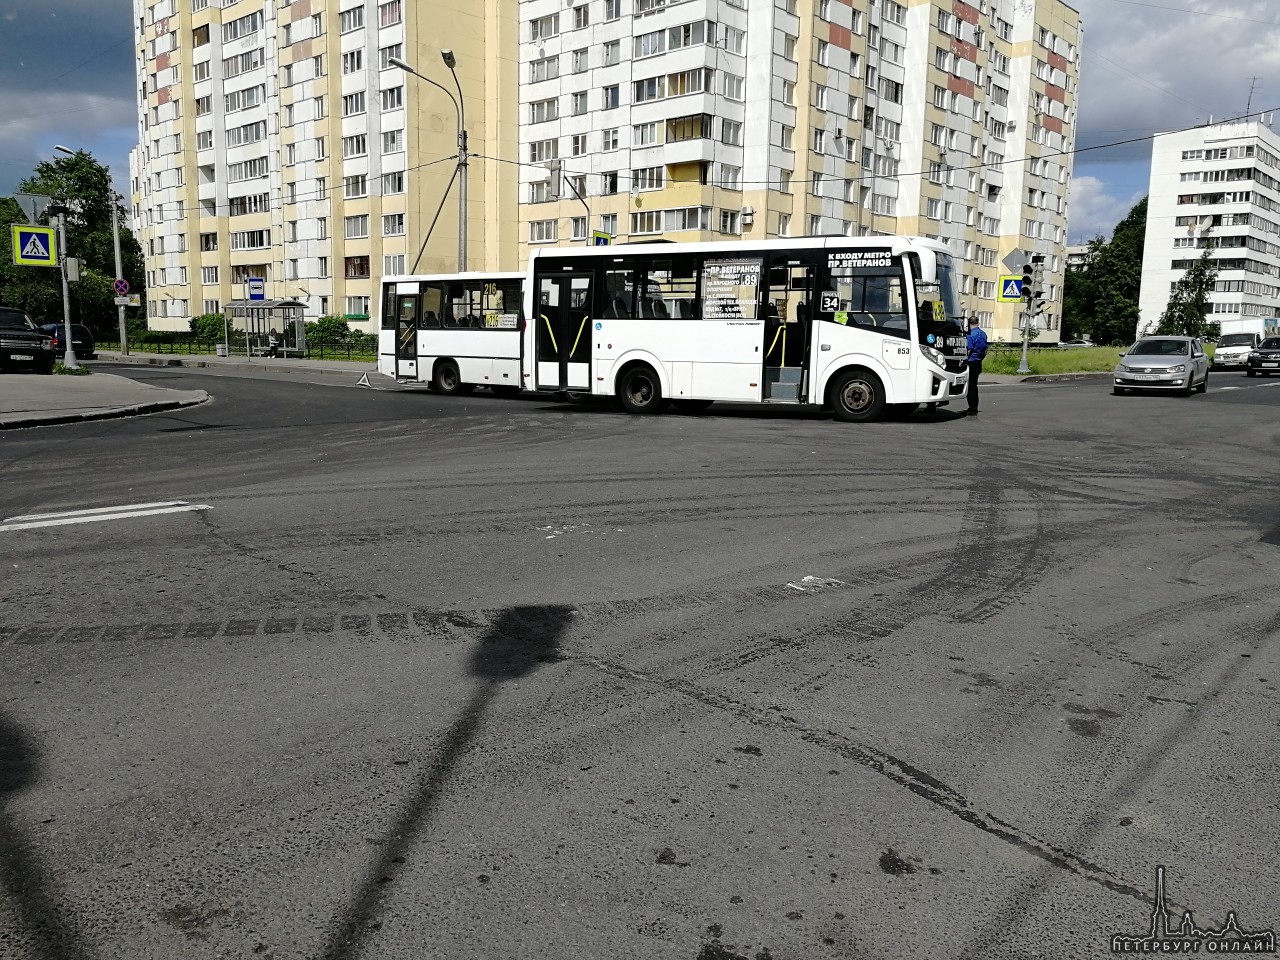 Маршрутки К-89 и К-216 не поделили левый поворот с улицы Солдата Корзуна на улицу Стойкости.